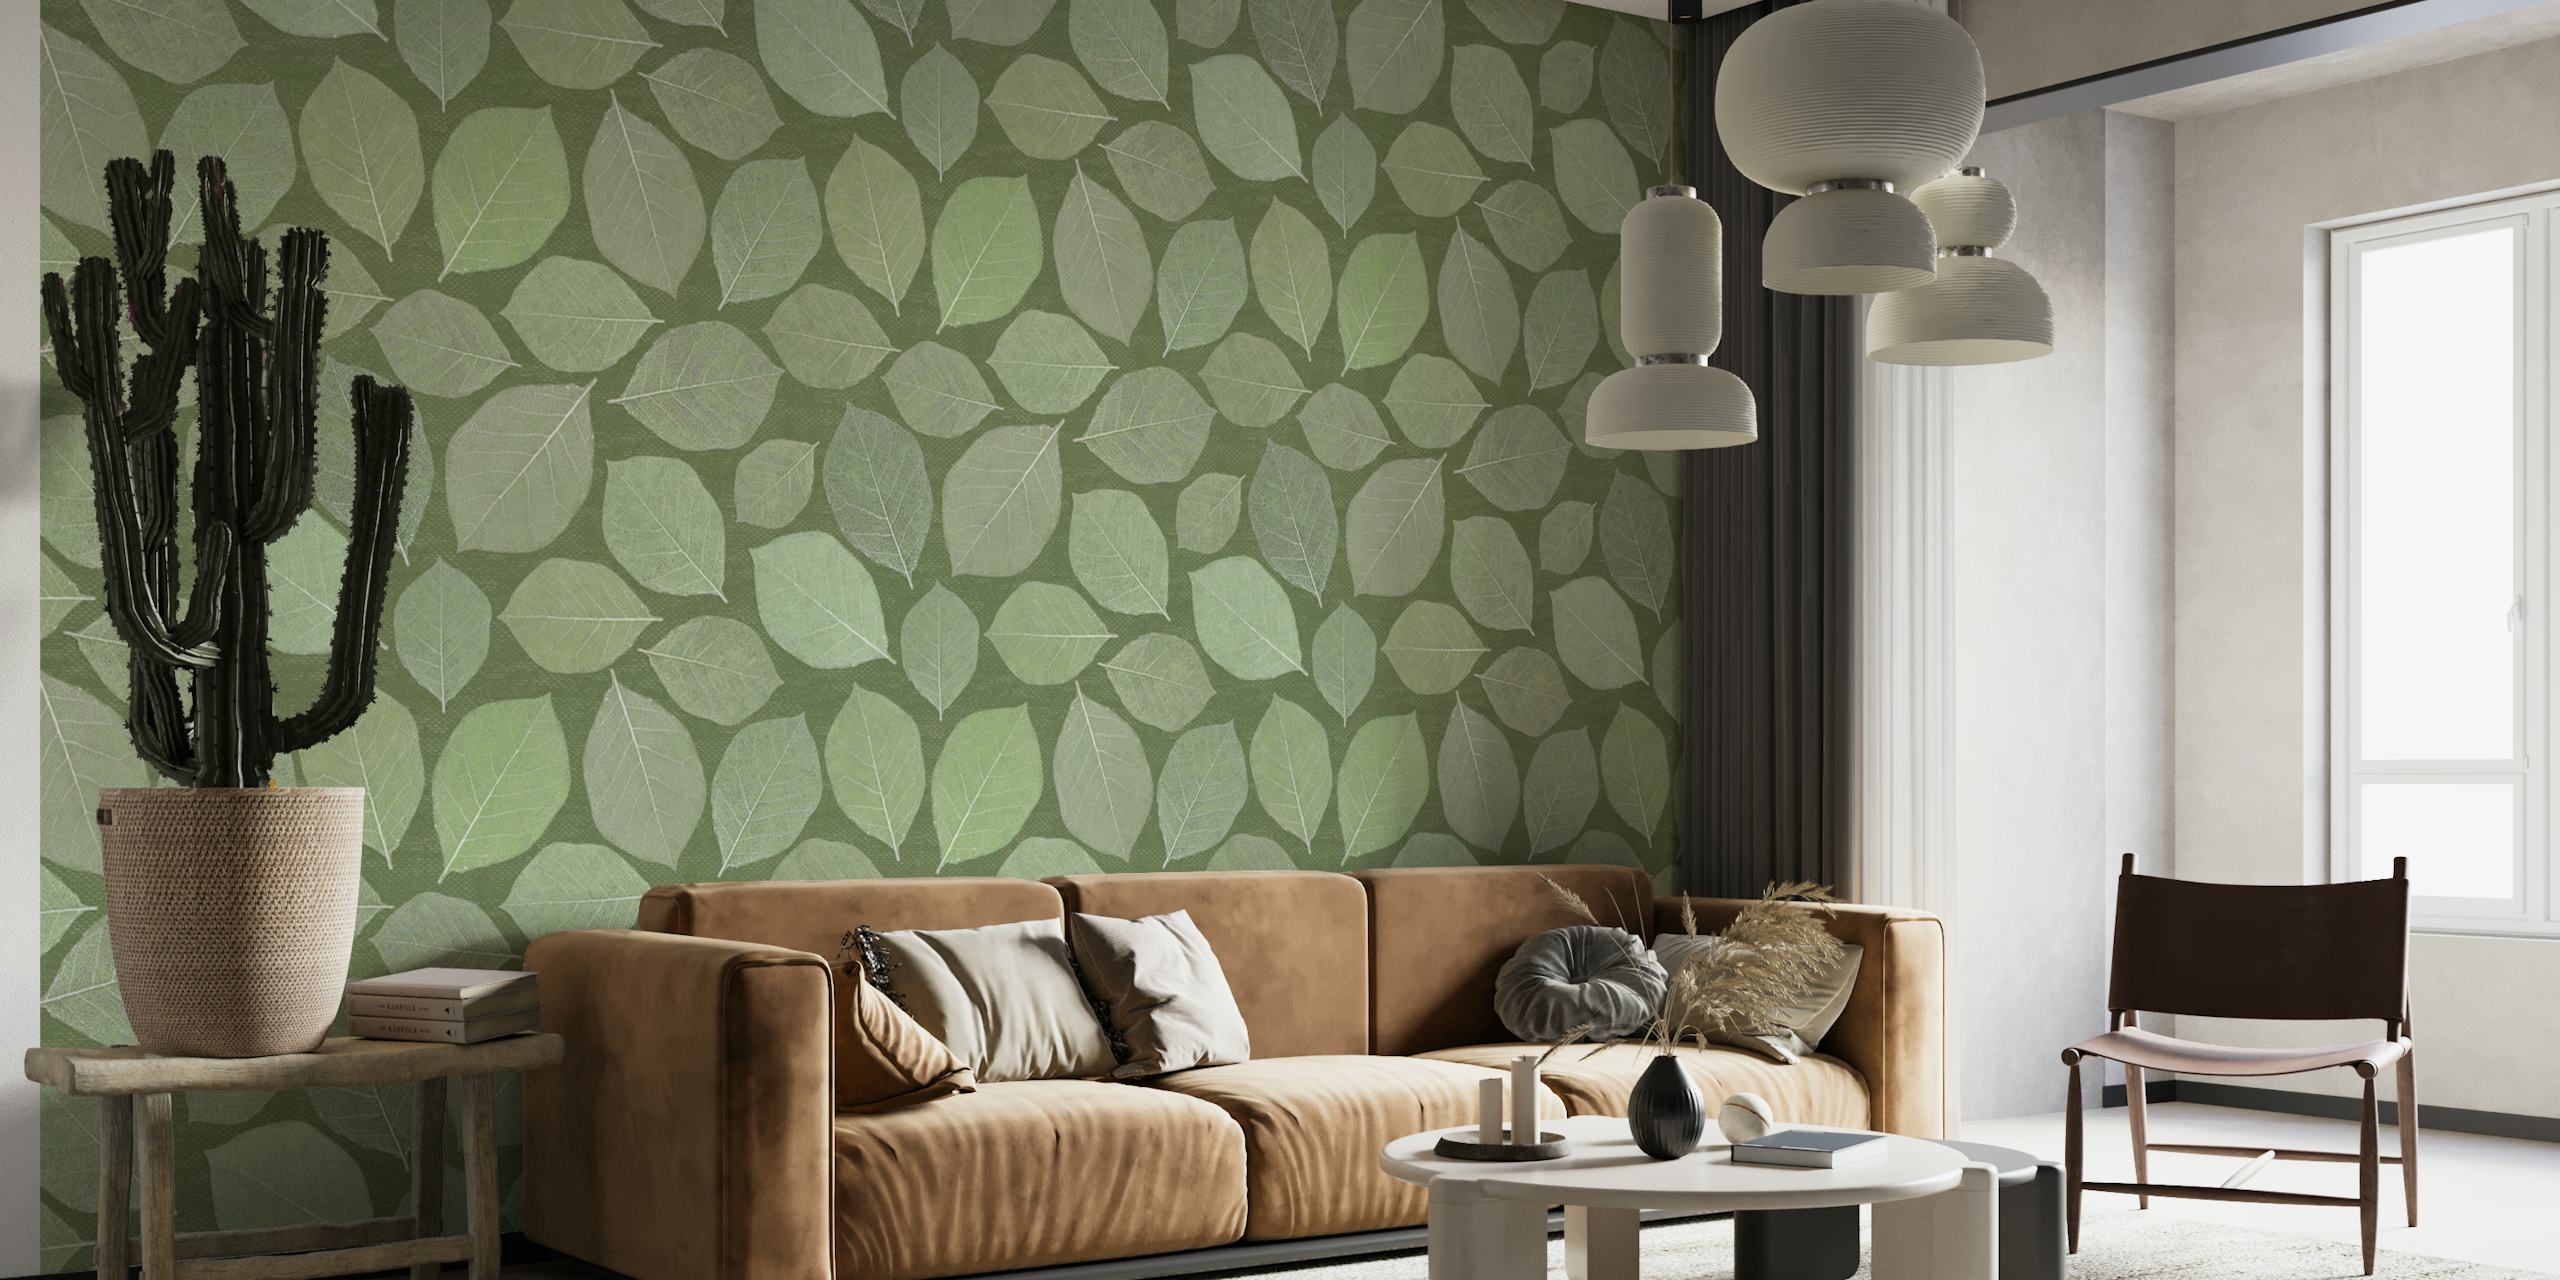 Muurschildering van magnoliabladeren in verschillende groene tinten, perfect voor een rustig interieur